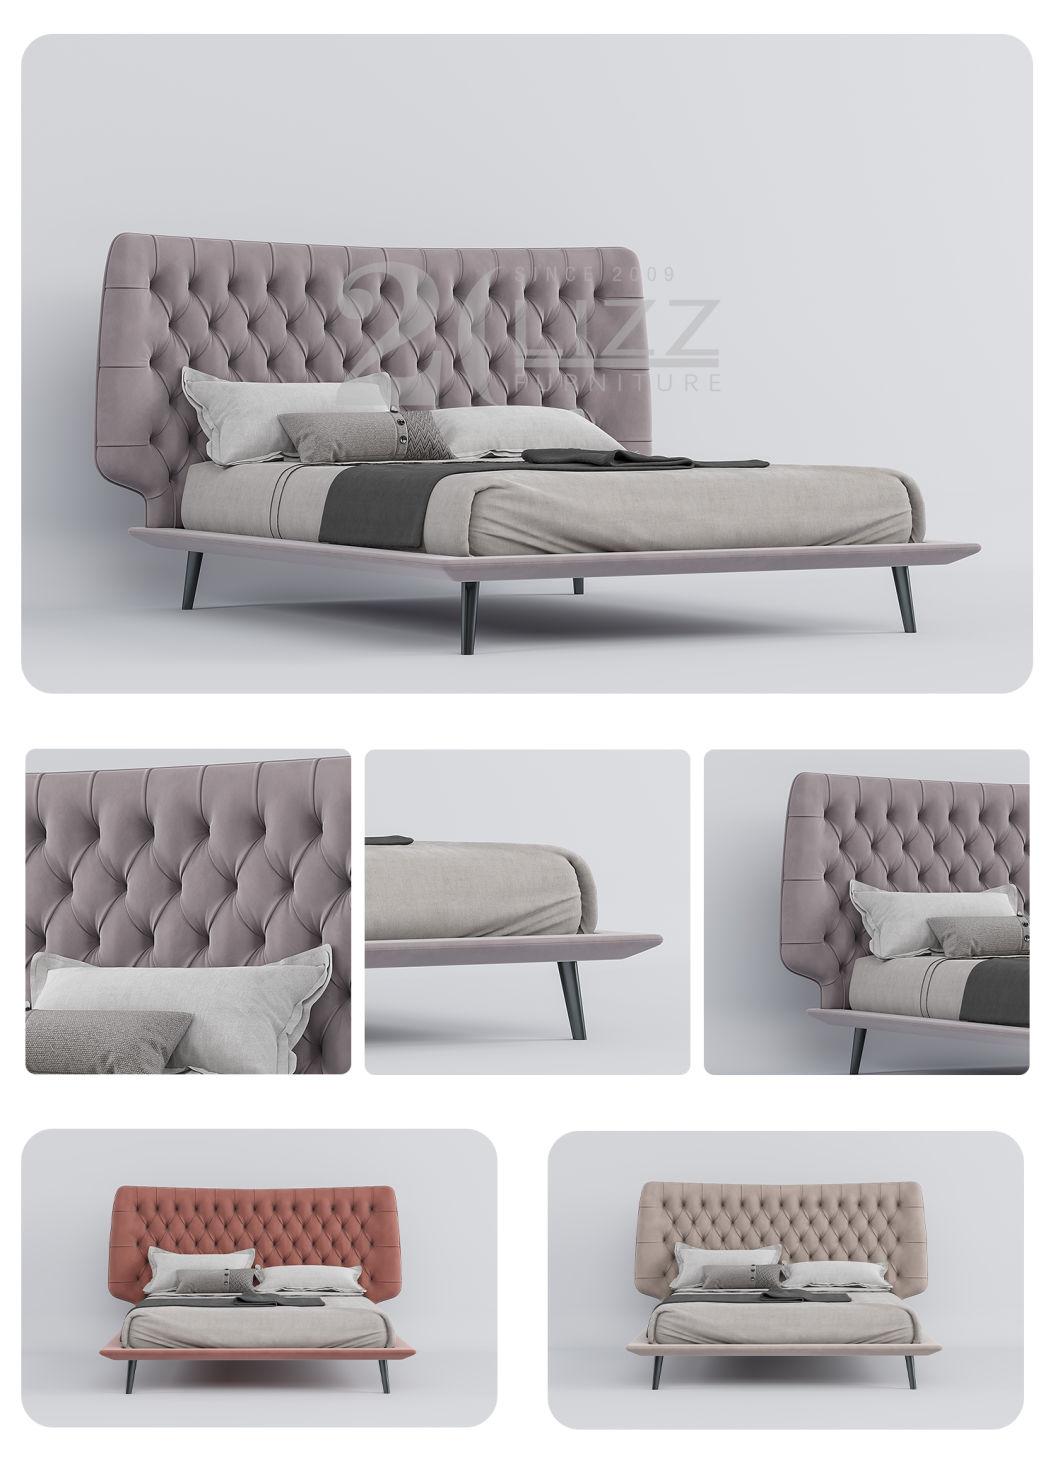 2022 Nordic Designer Solid Wood Frame Bedroom Furniture Modern Upholstered Platfoam Bed